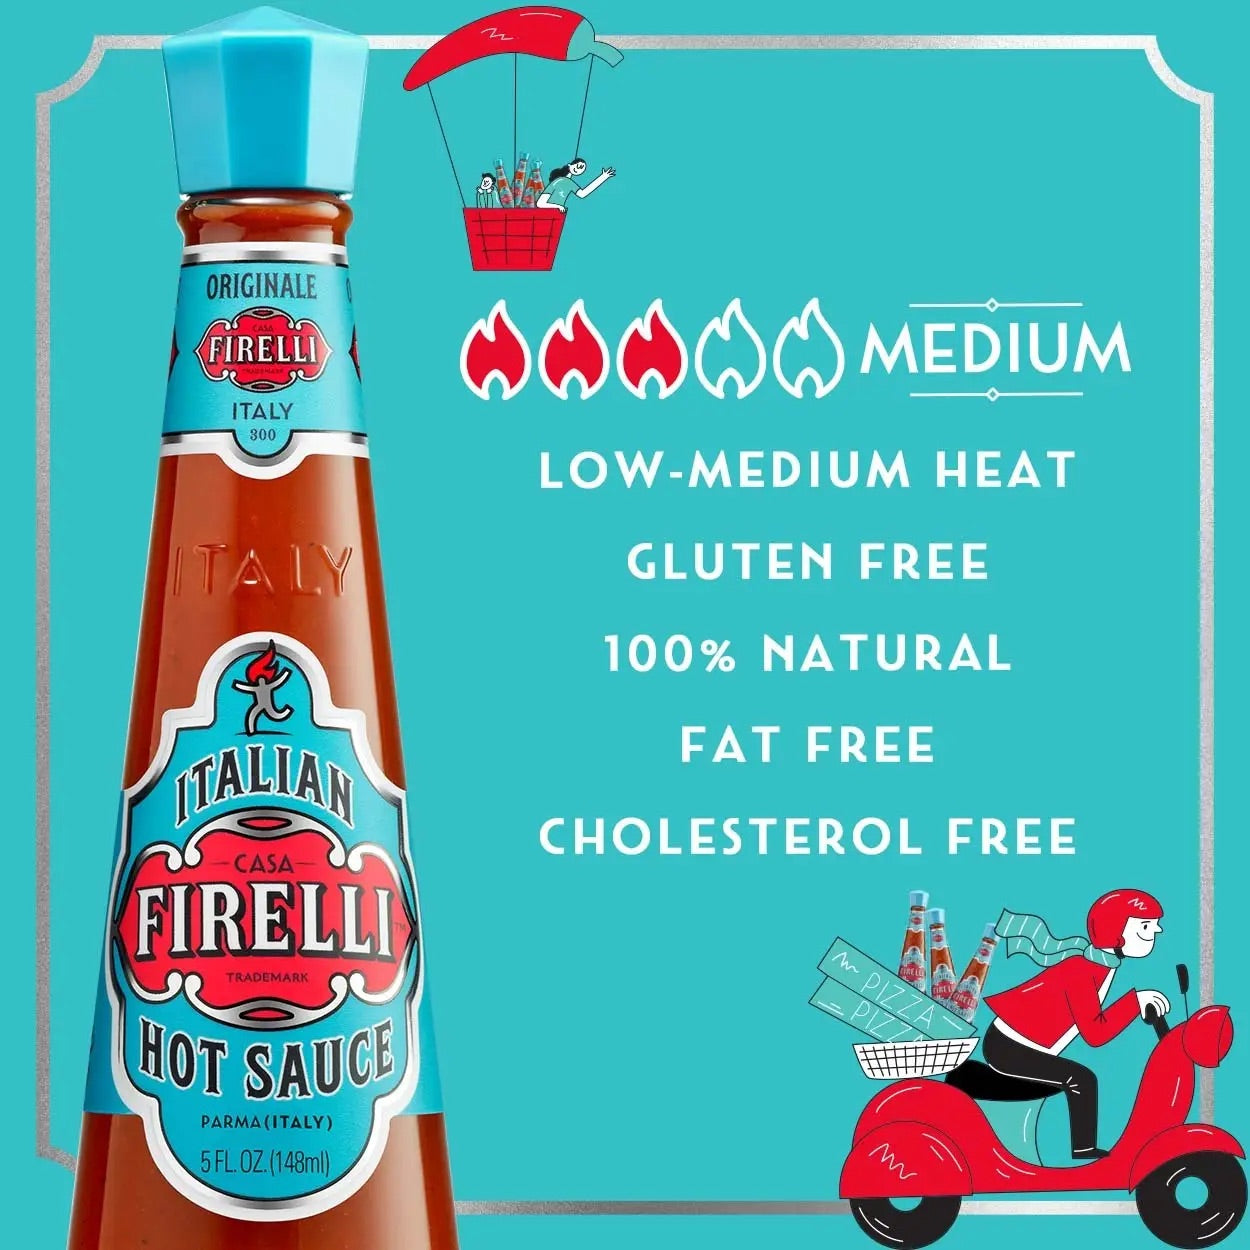 Firelli "Originale" Italian Hot Sauce